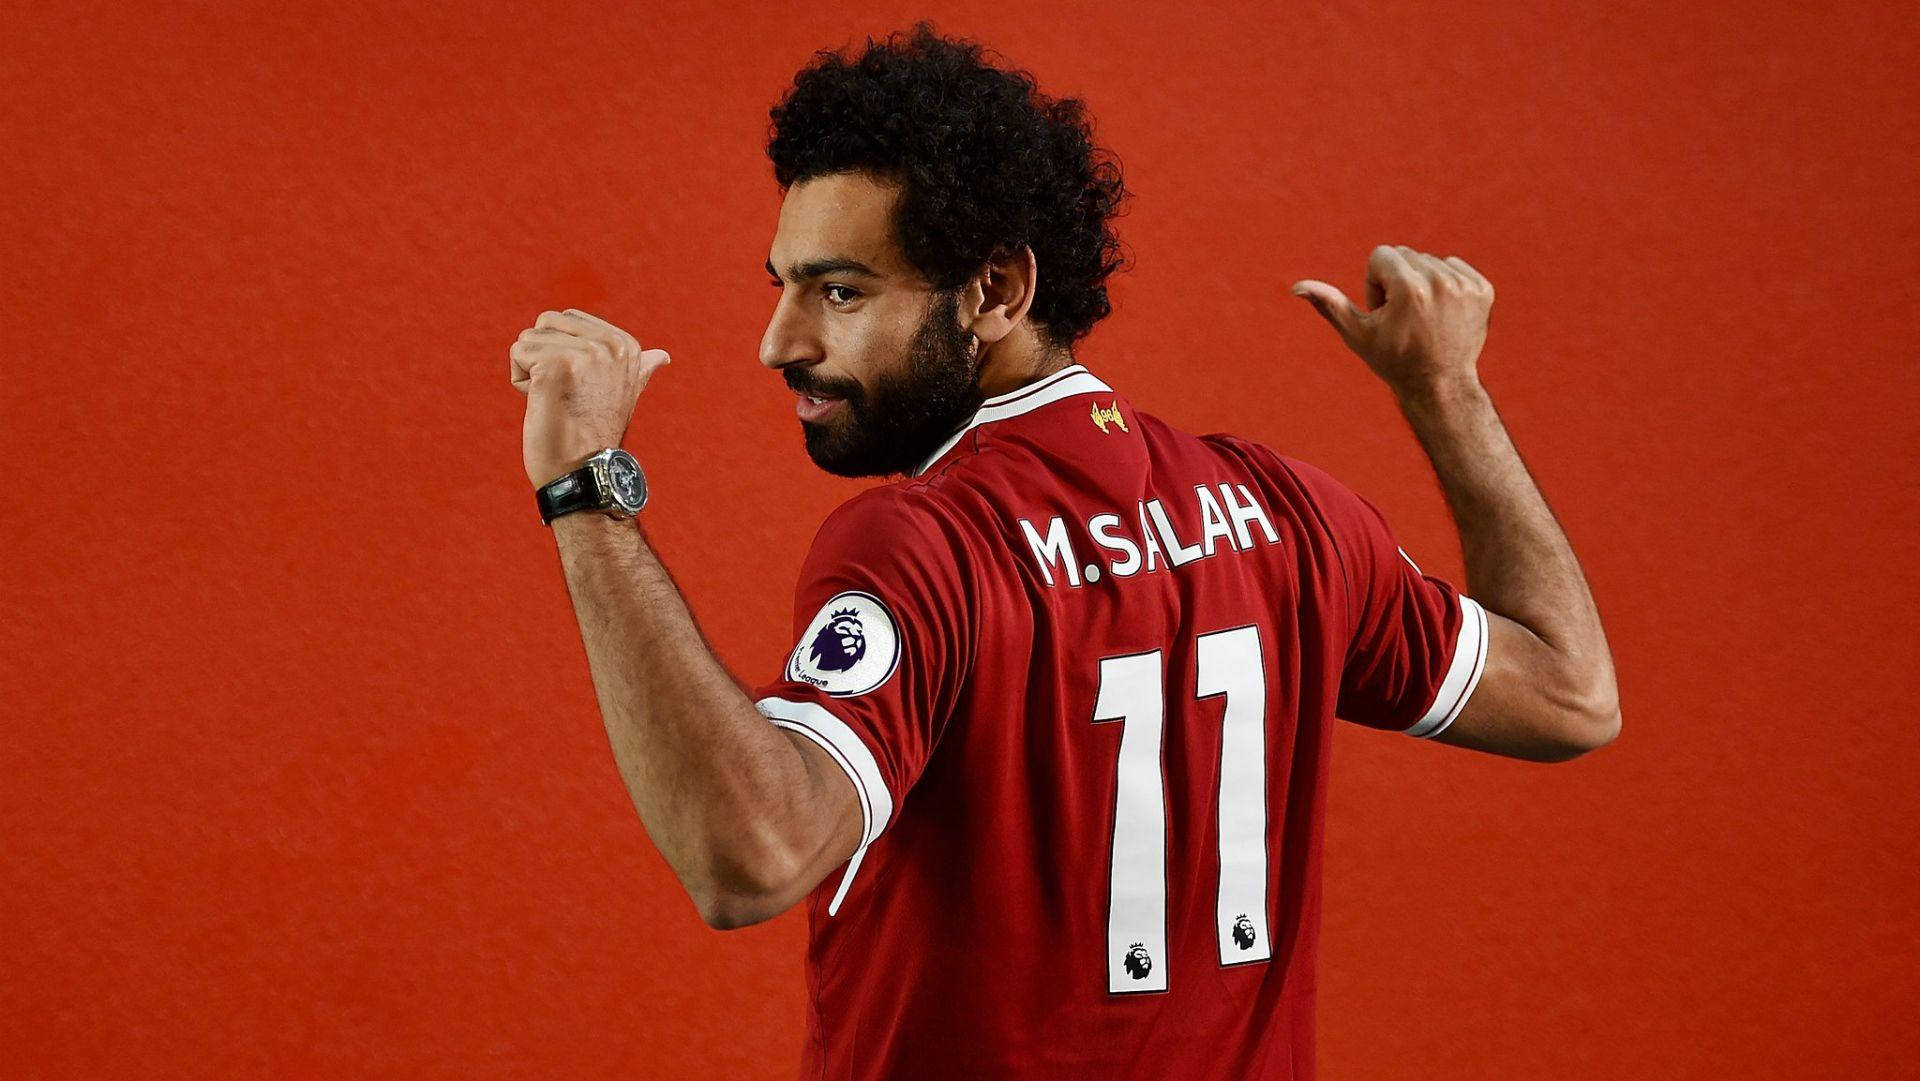 Proud Mohamed Salah Liverpool11 Wallpaper